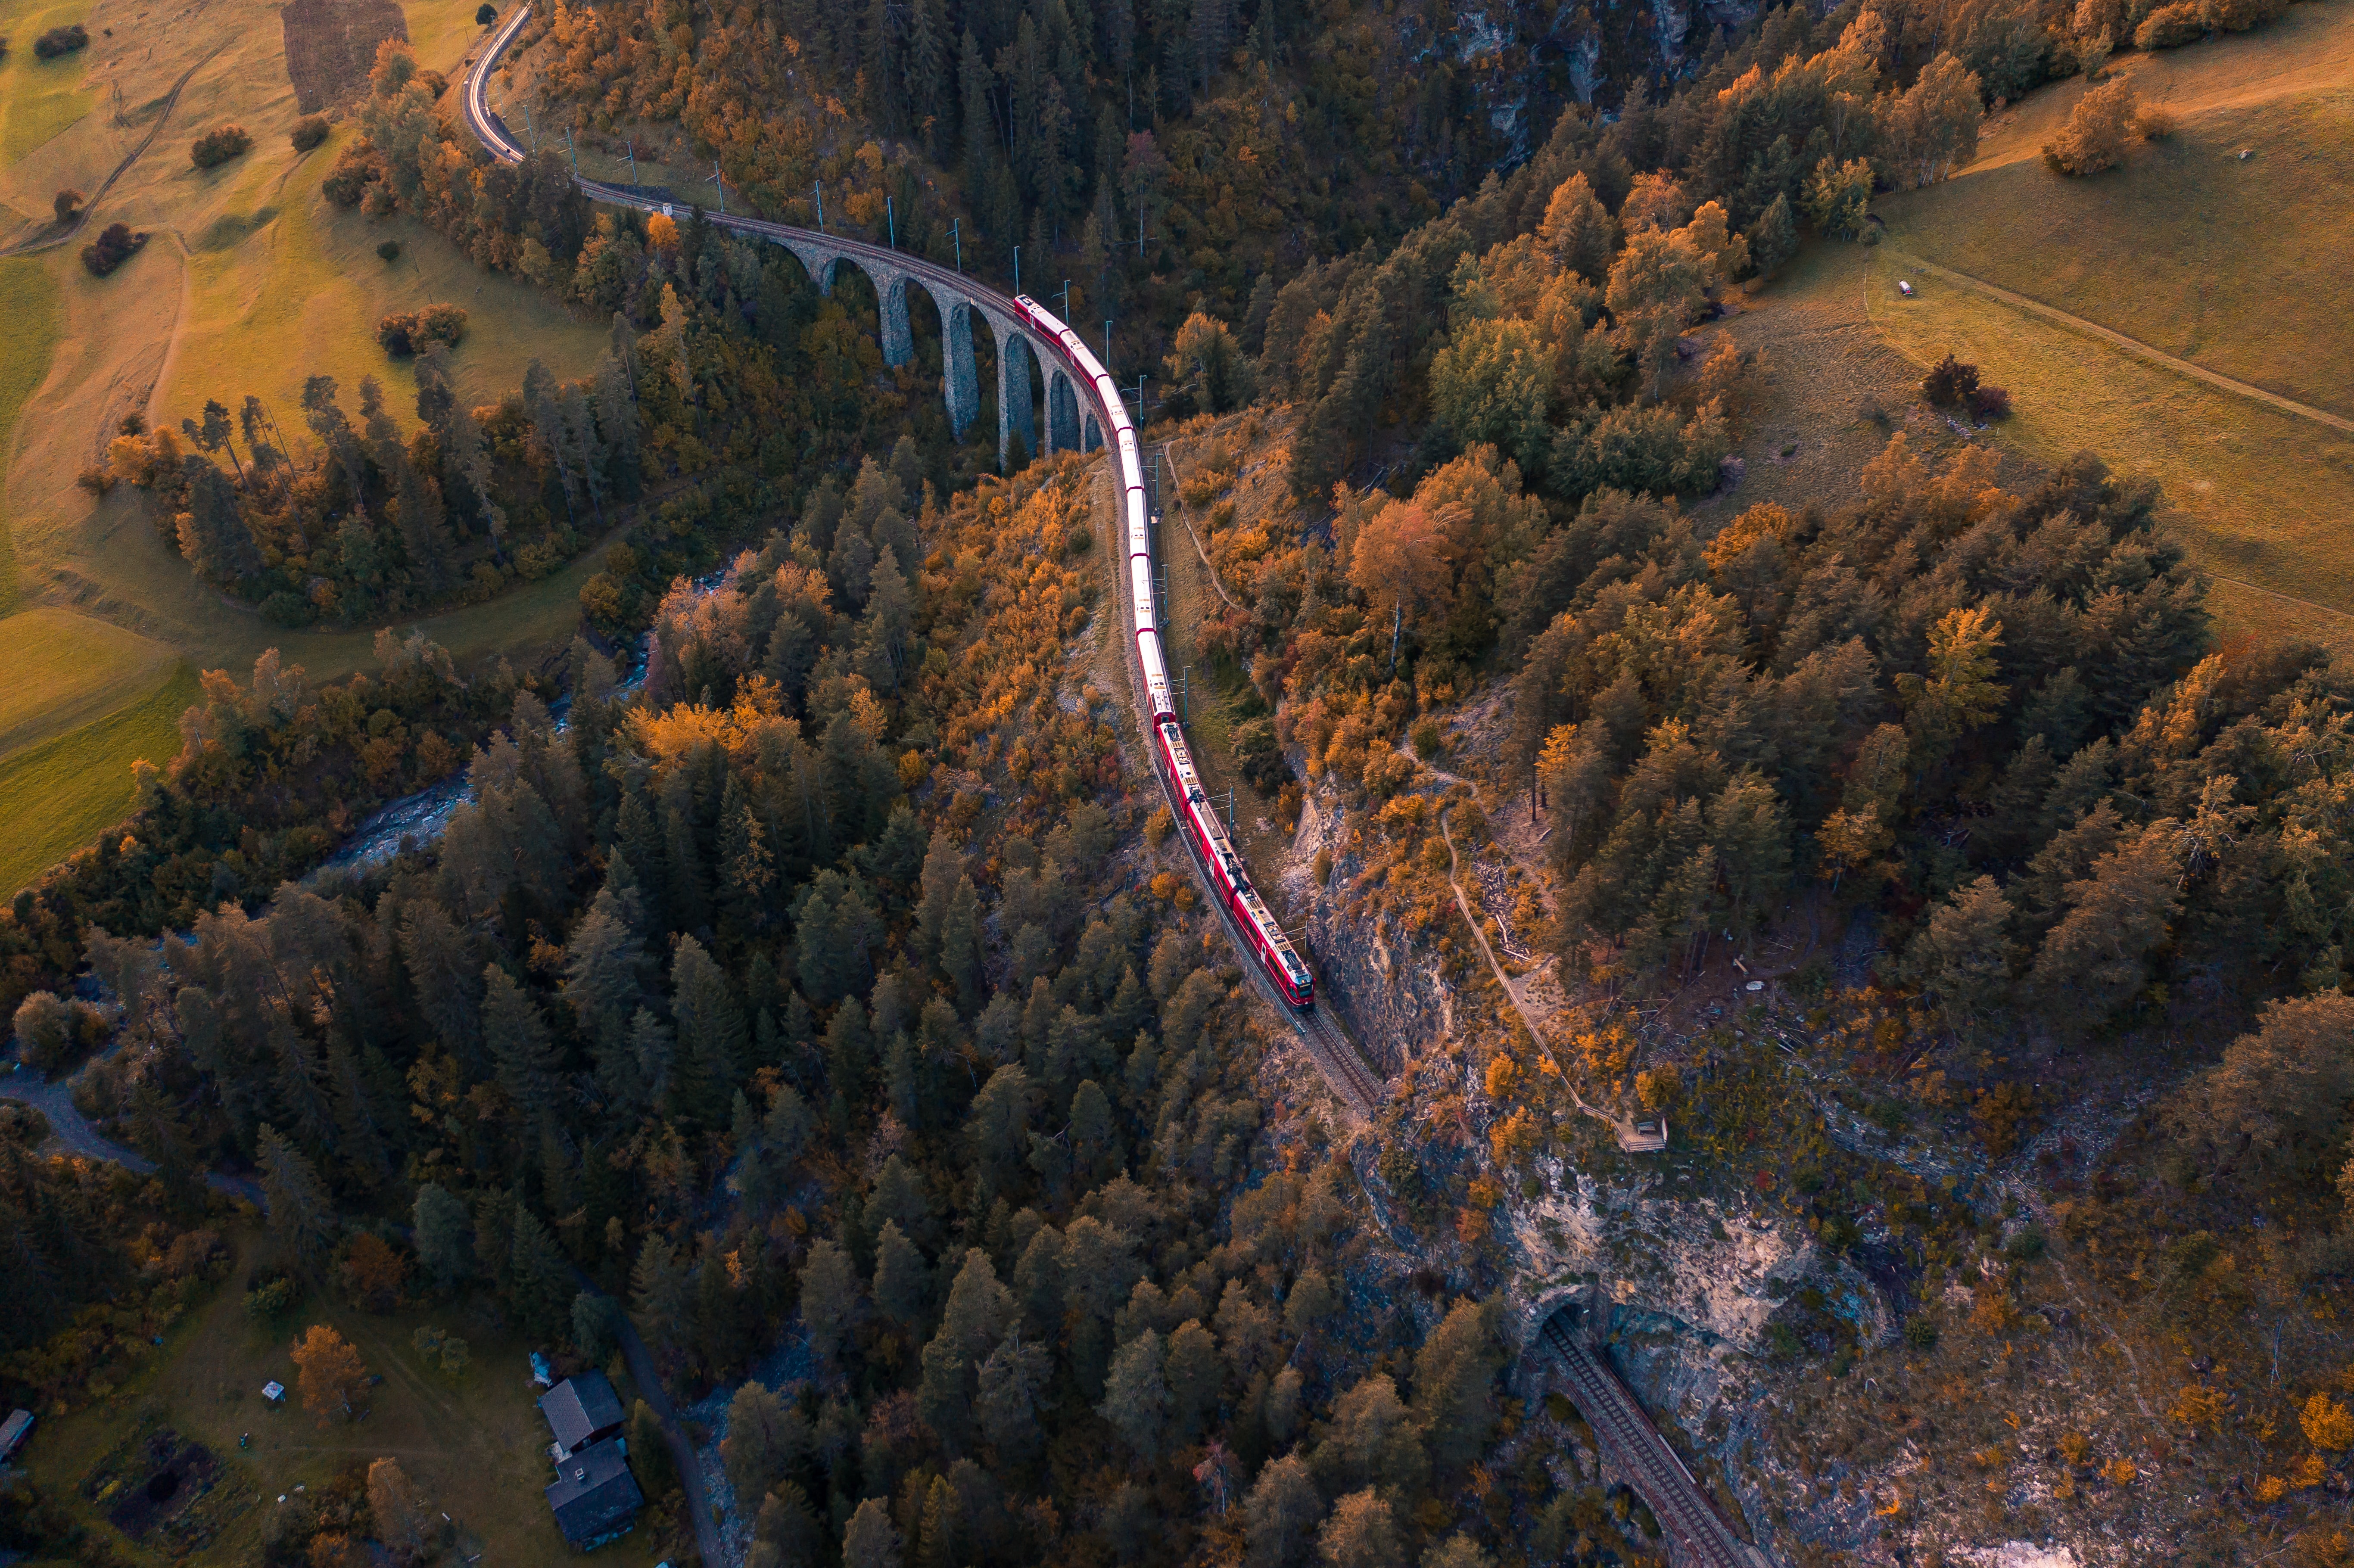 General 5464x3640 train aerial view Switzerland bridge railway nature forest viaduct tunnel